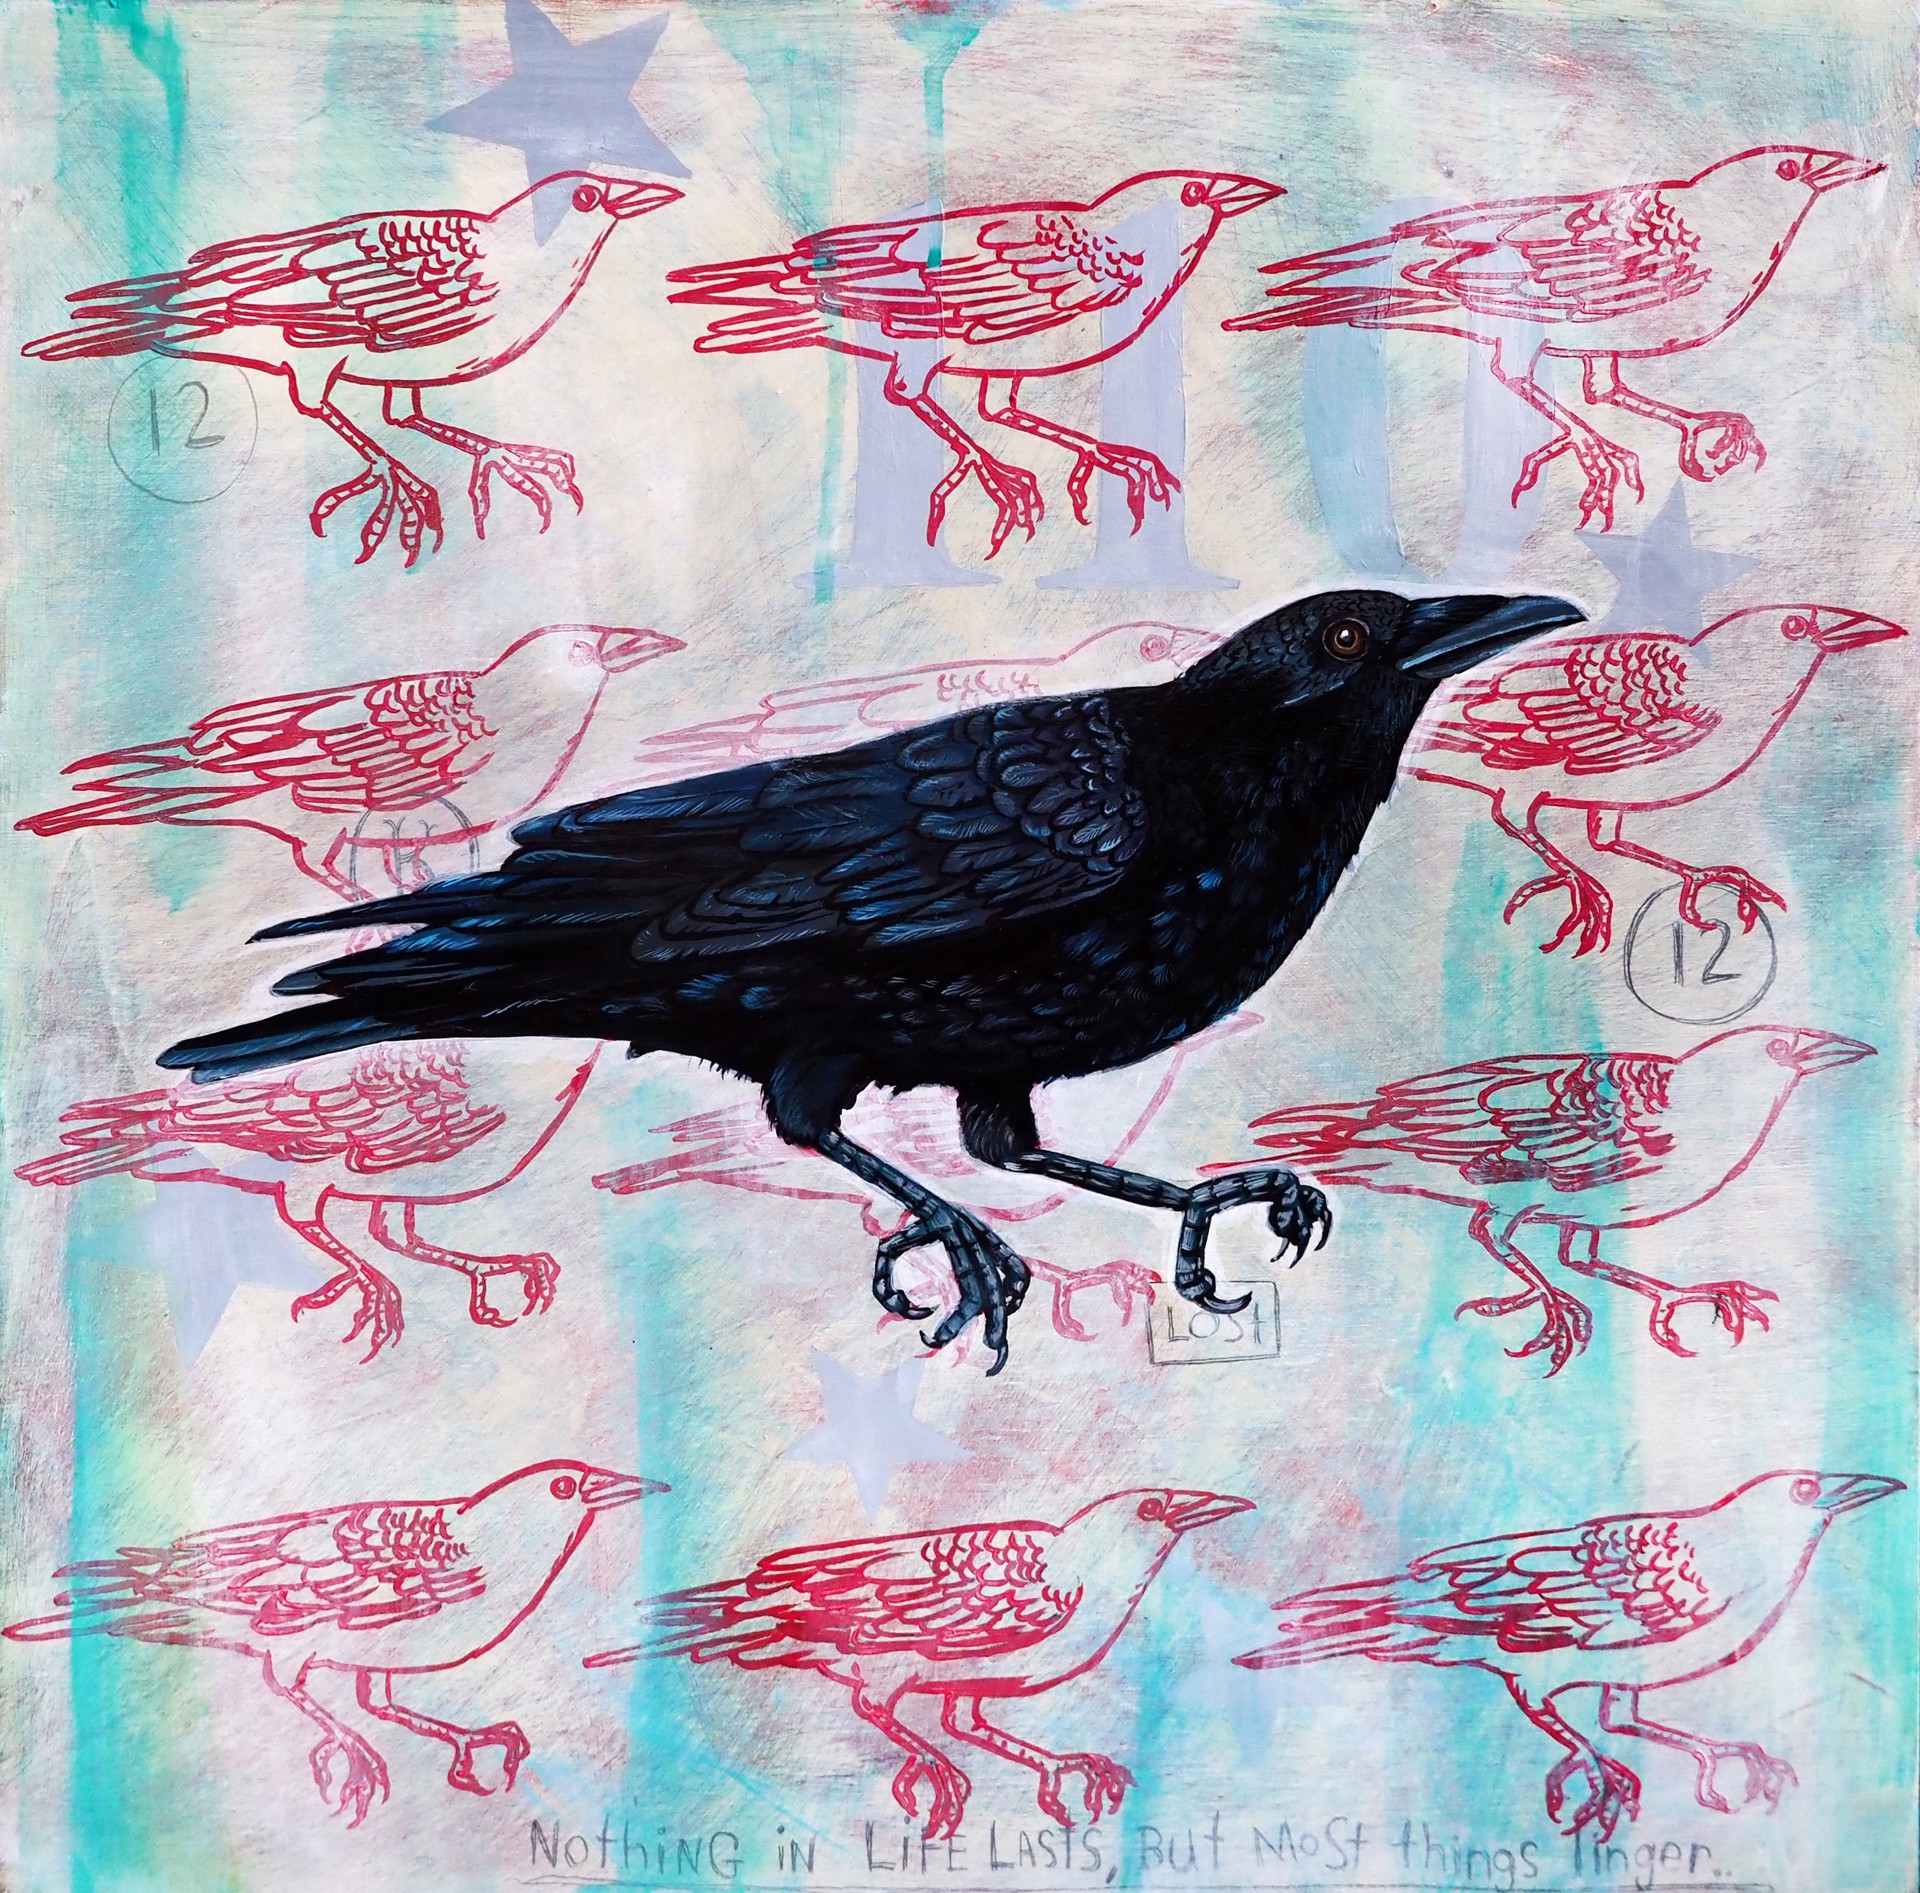 12 Crows by Tim Hooper